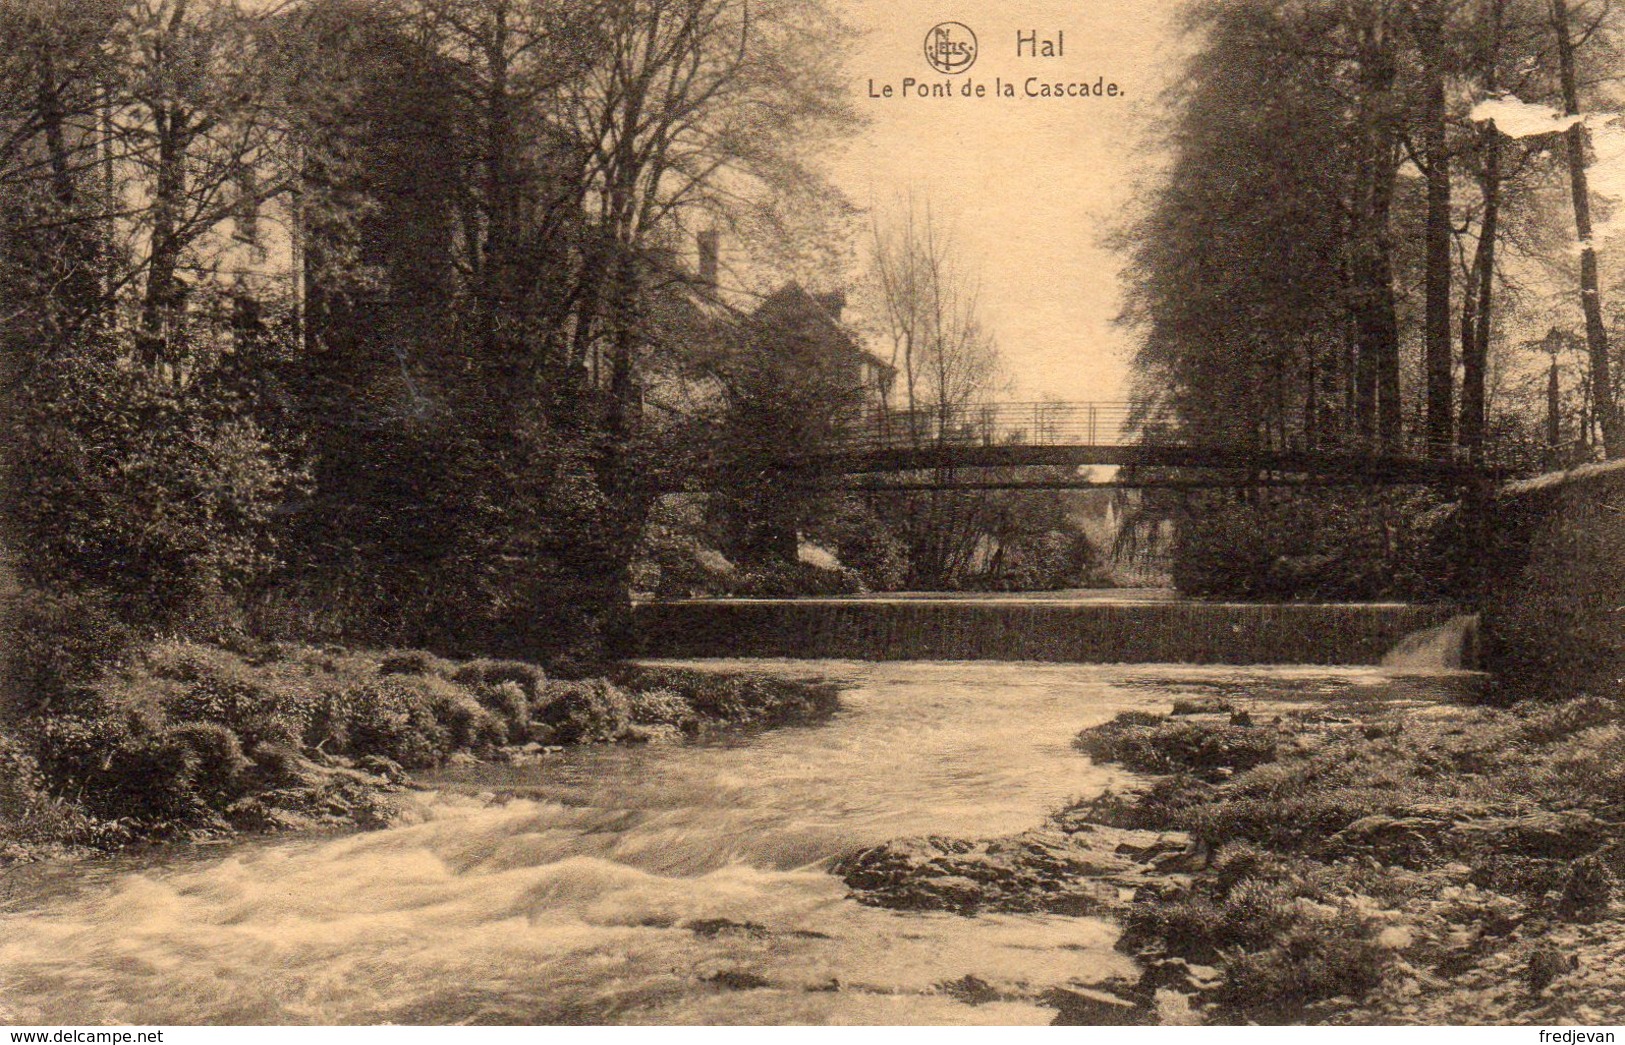 Hal / Halle - Le Pont De La Cascade - Halle